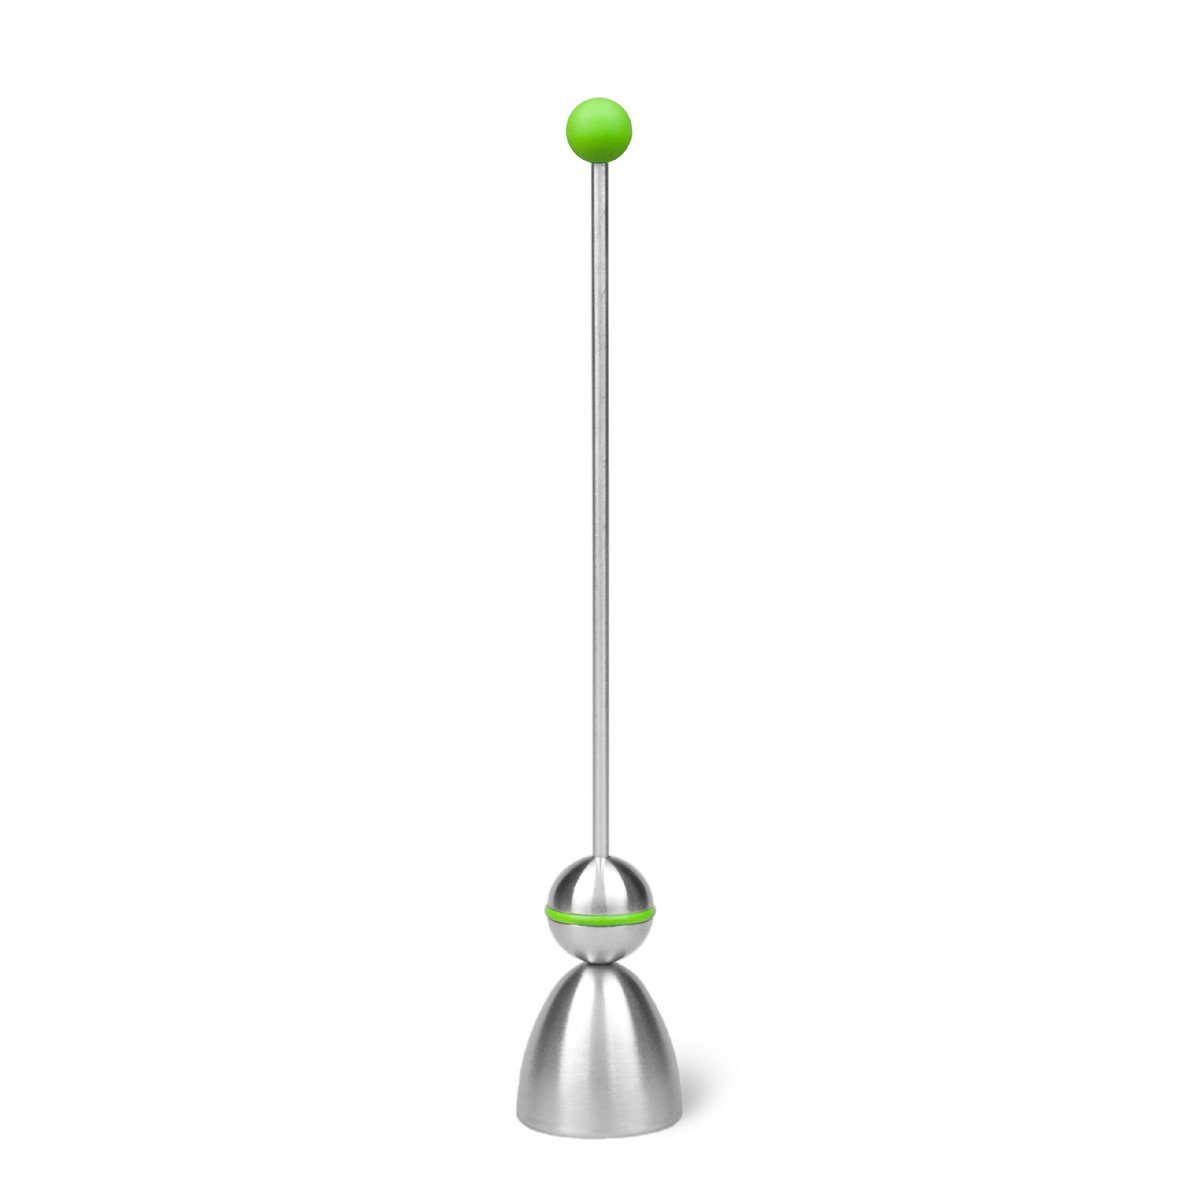 Take2-Design Eierköpfer Eieröffner CLACK grün Kugel